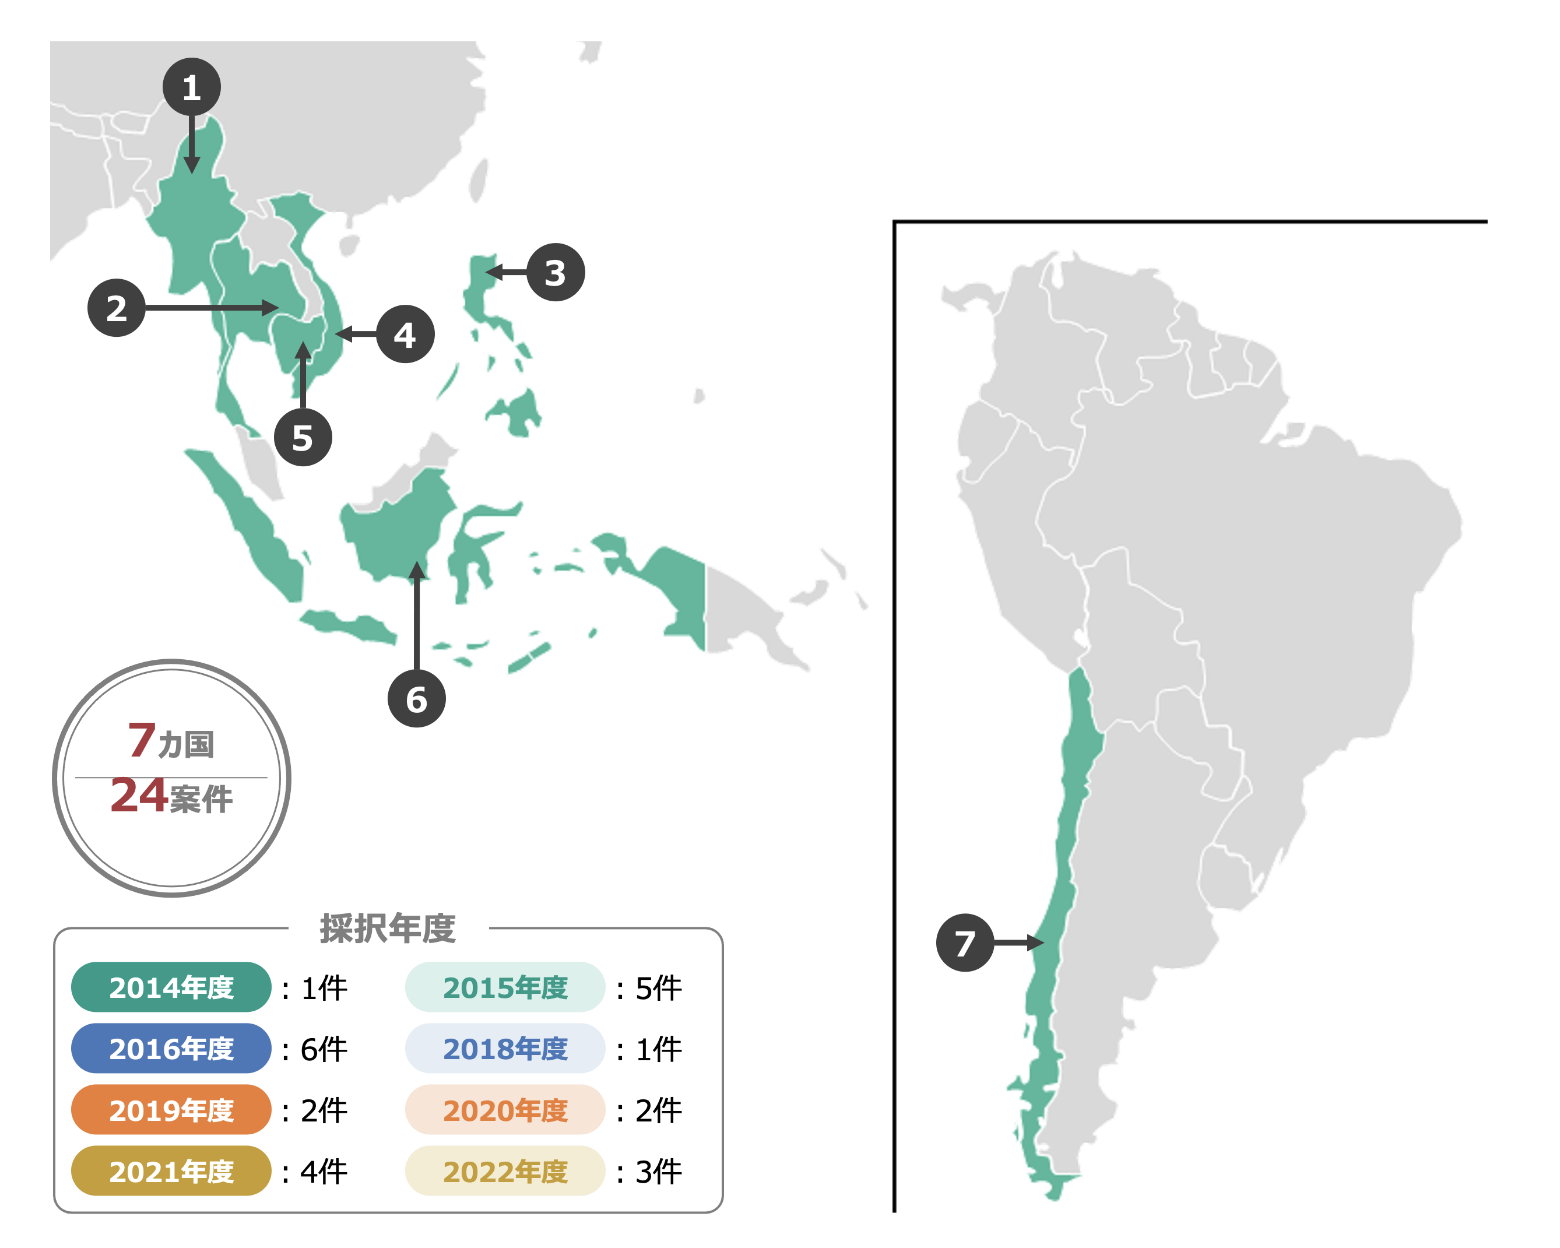 「都市間連携事業から形成されたJCM案件」の採択年度別の件数と対象の各国のマップ